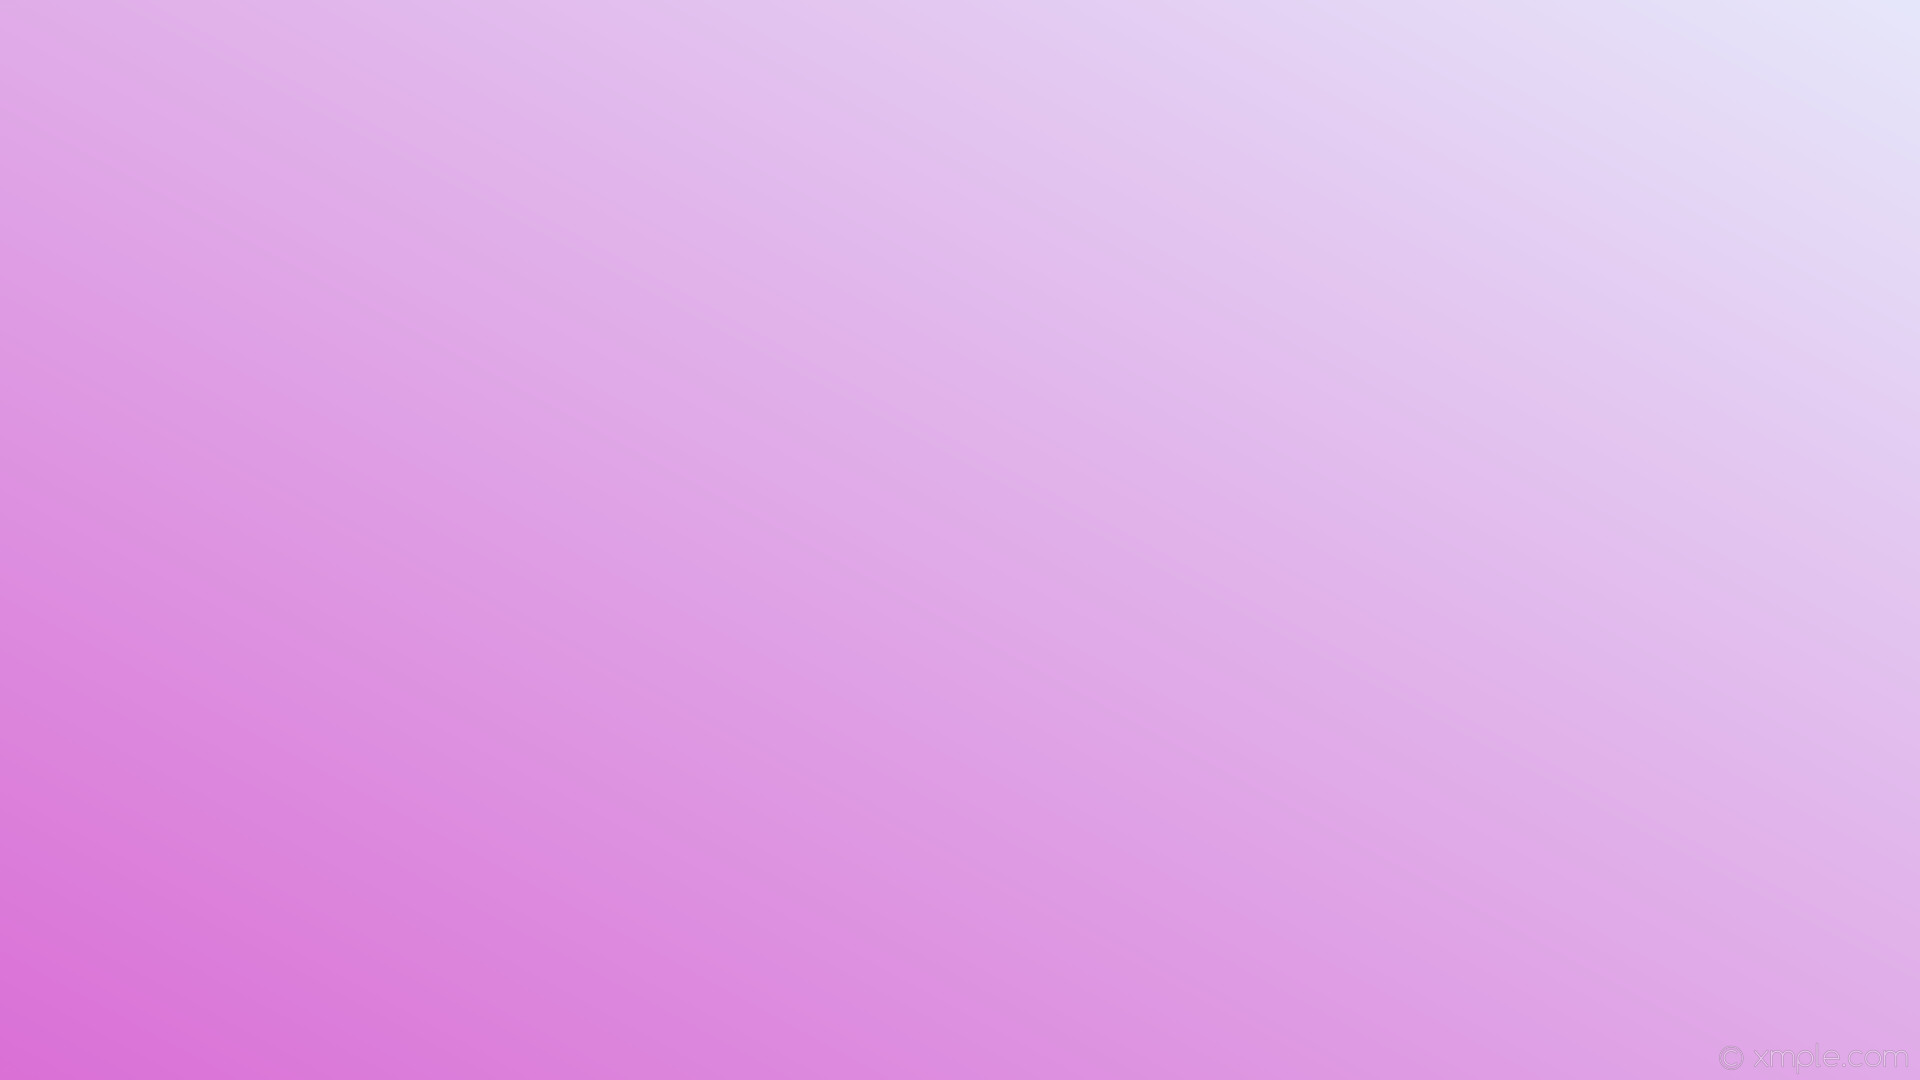 1920x1080 wallpaper gradient purple linear lavender orchid #e6e6fa #da70d6 30Â°